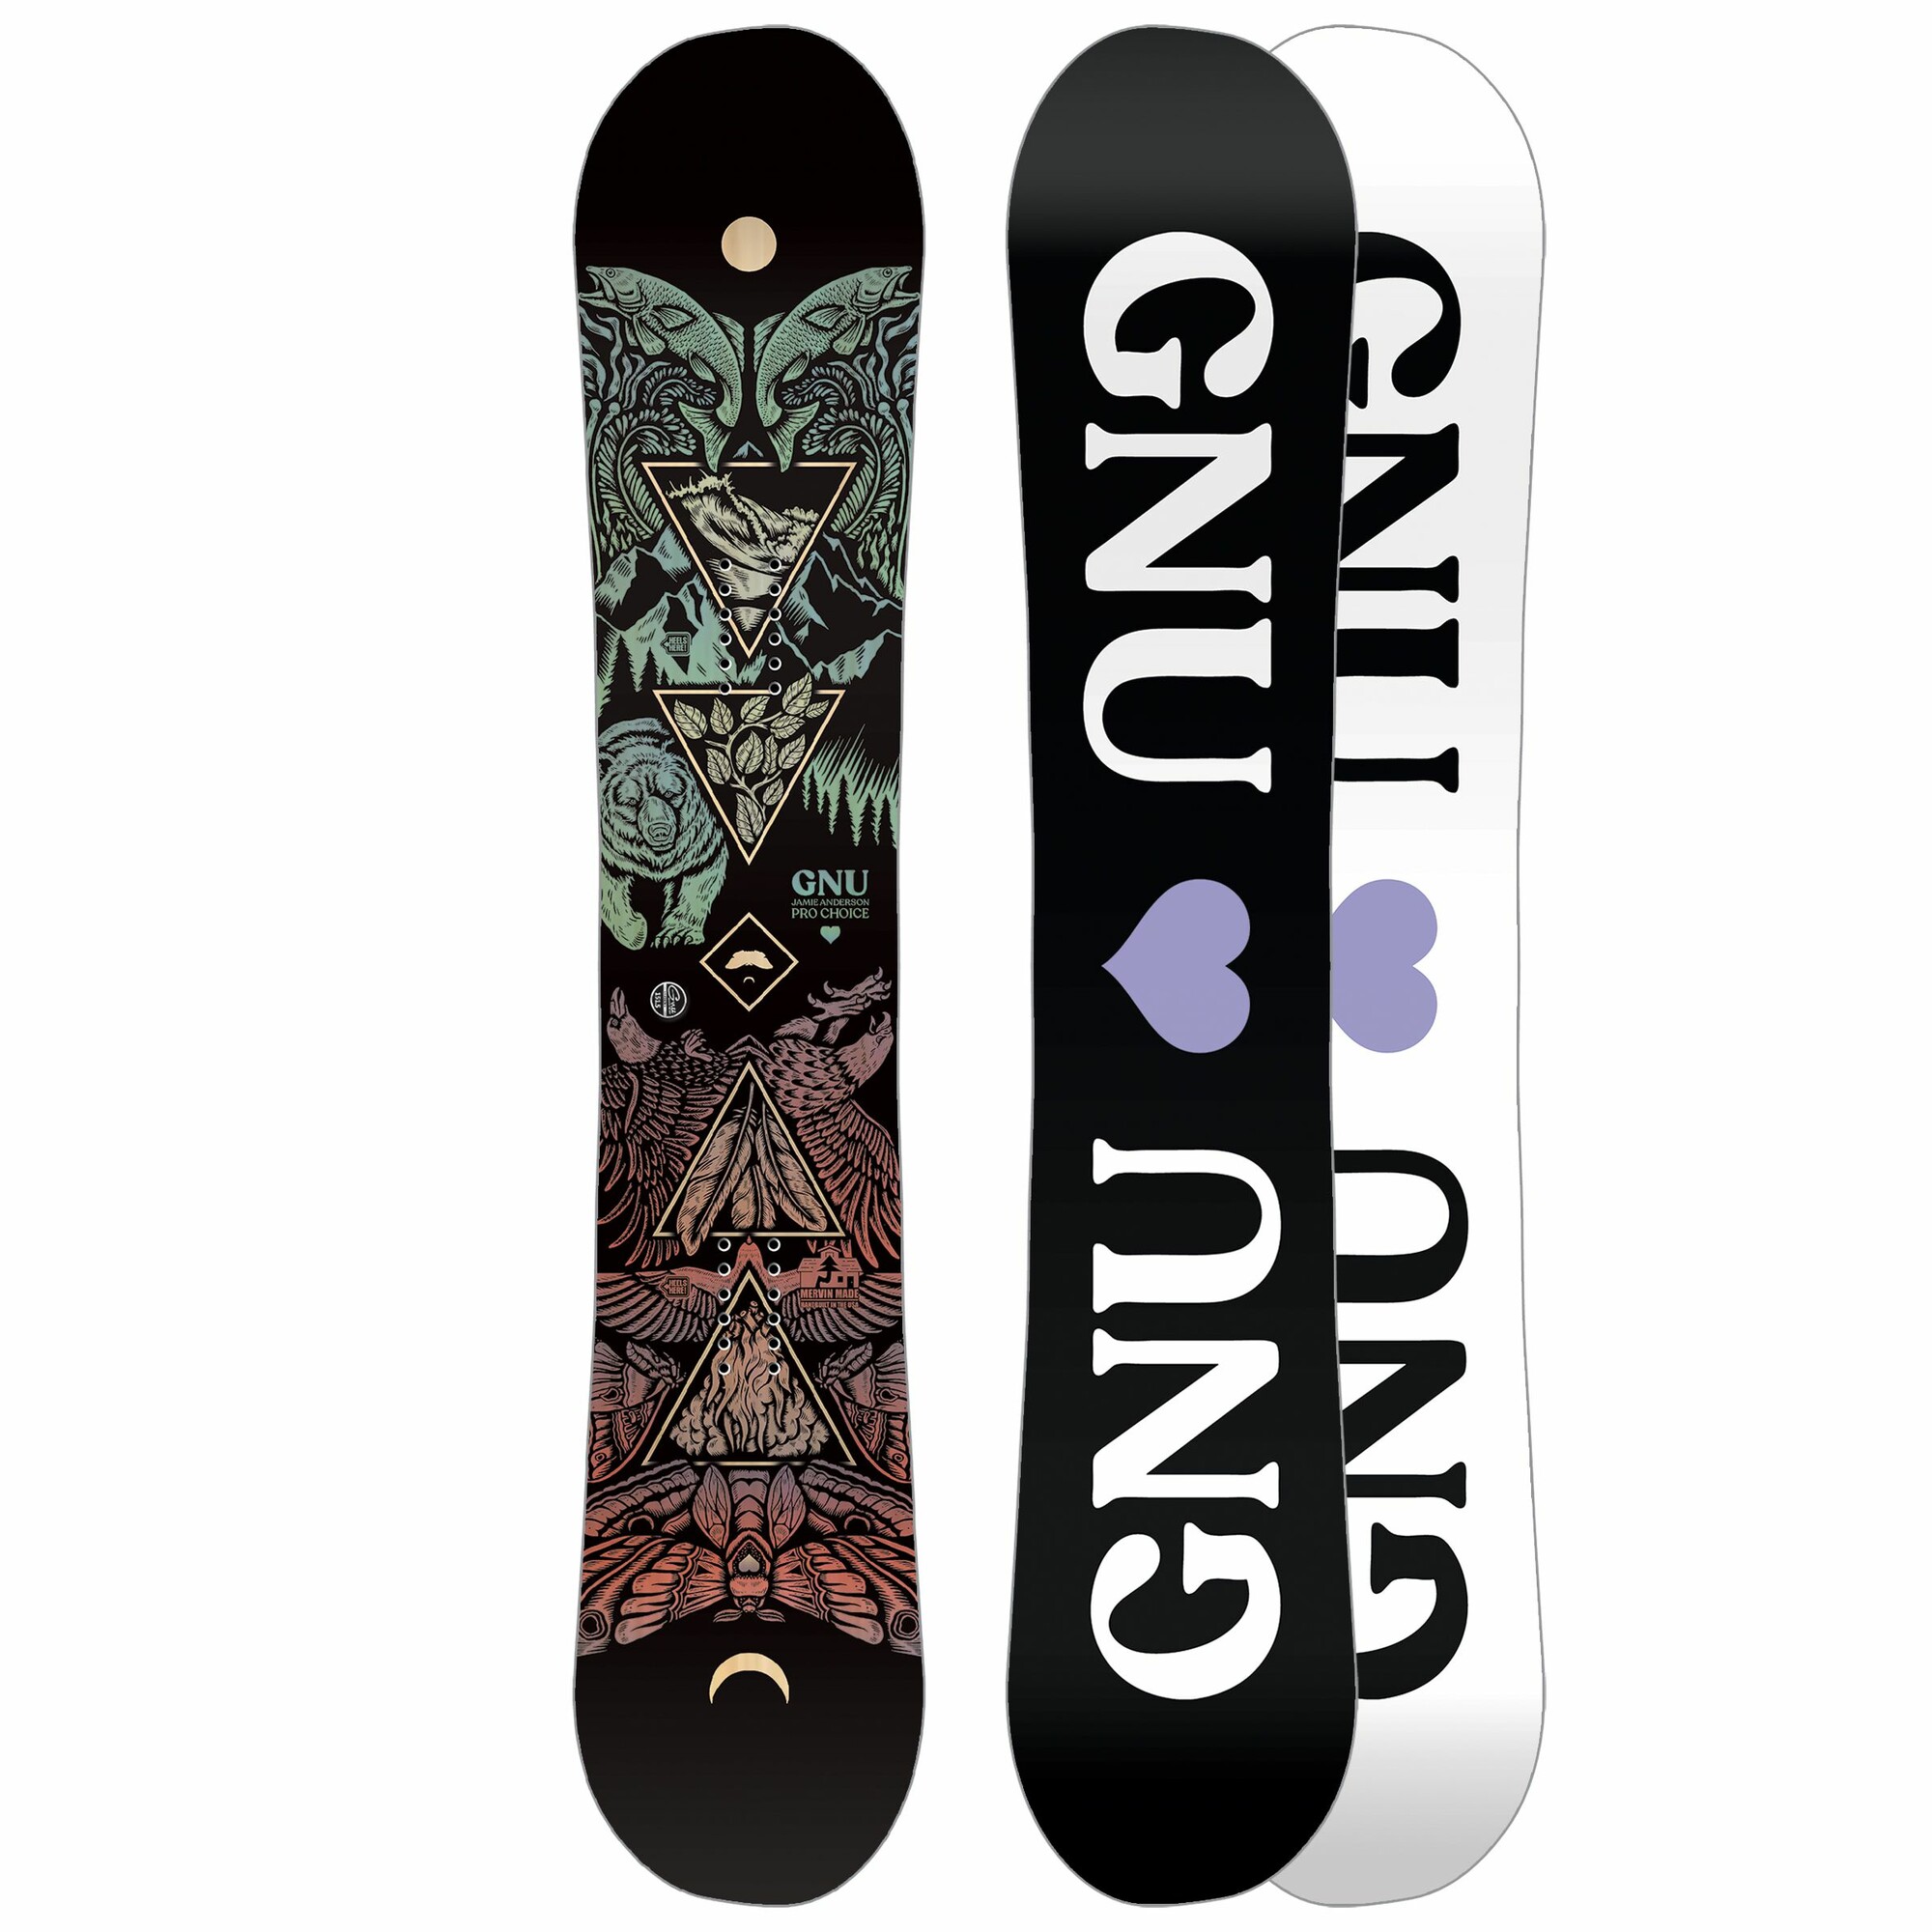 Gnu Pro Choice snowboard